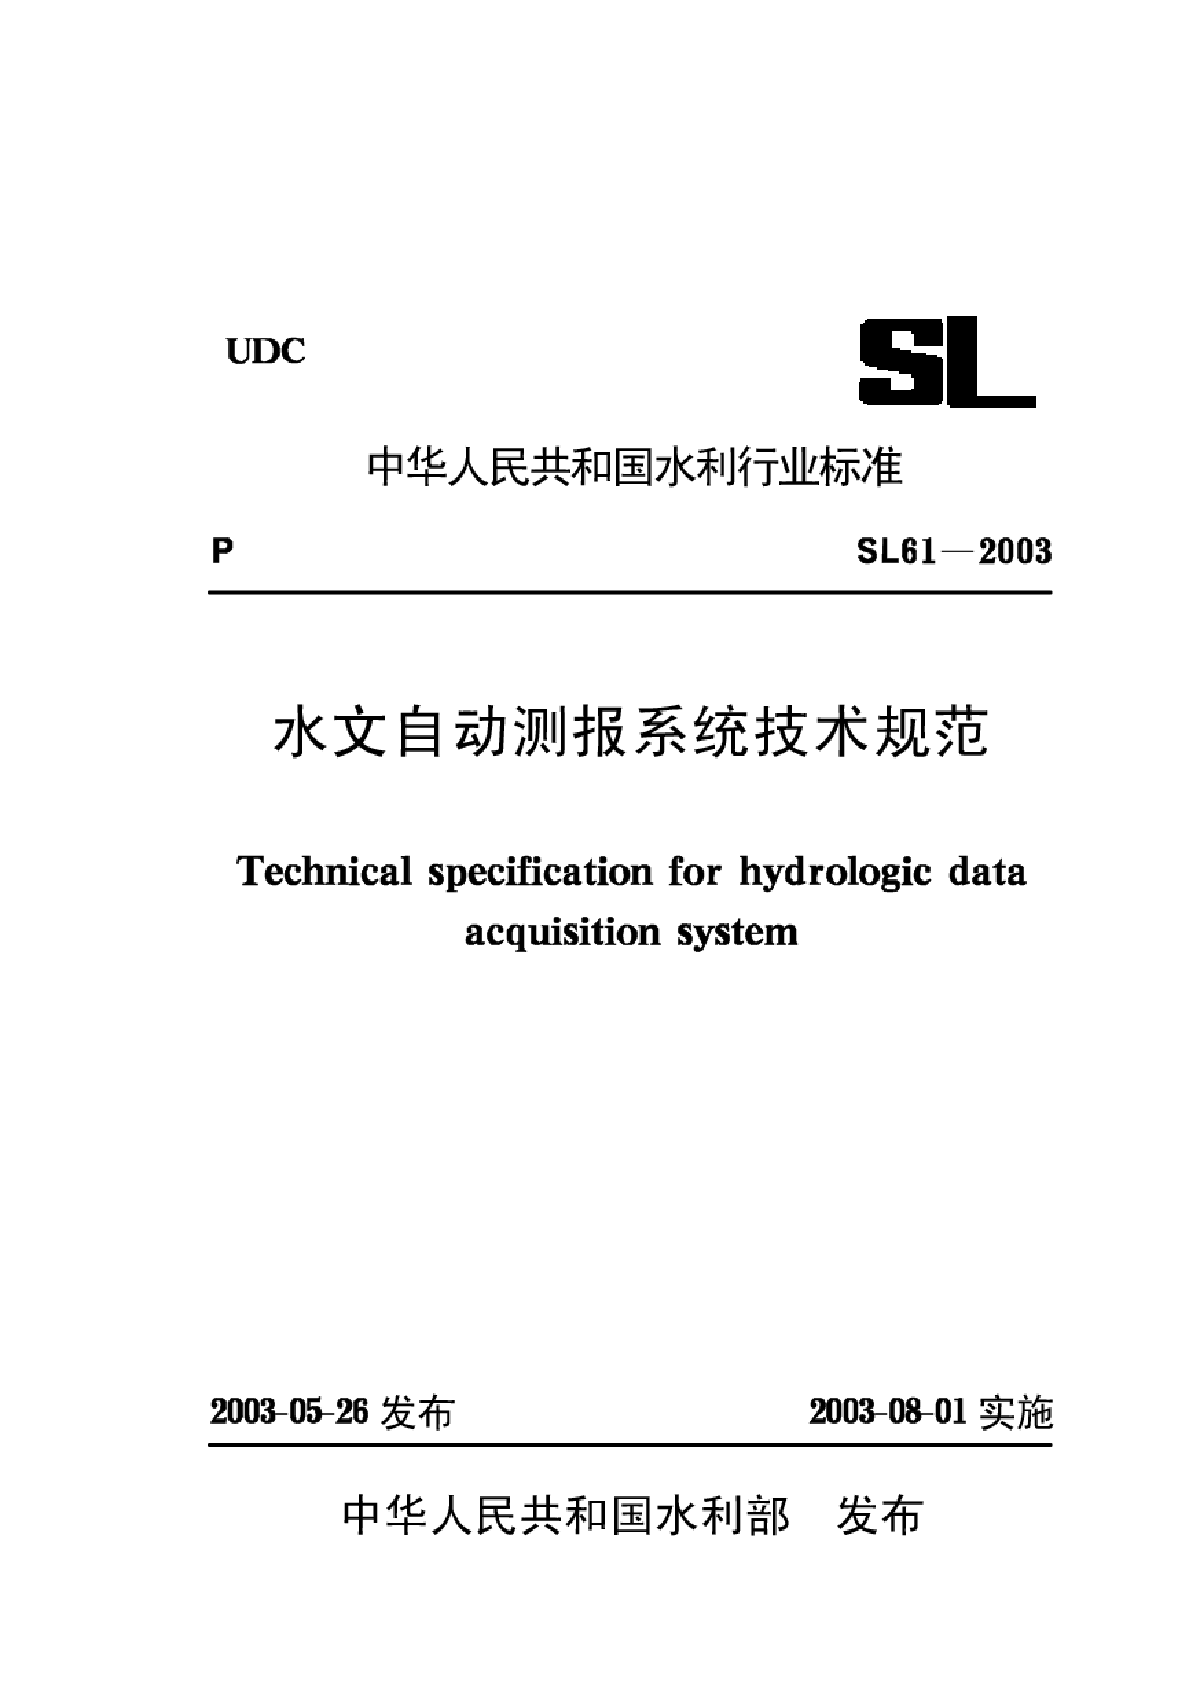 03水文自动测报系统技术规范【SL61-2003】